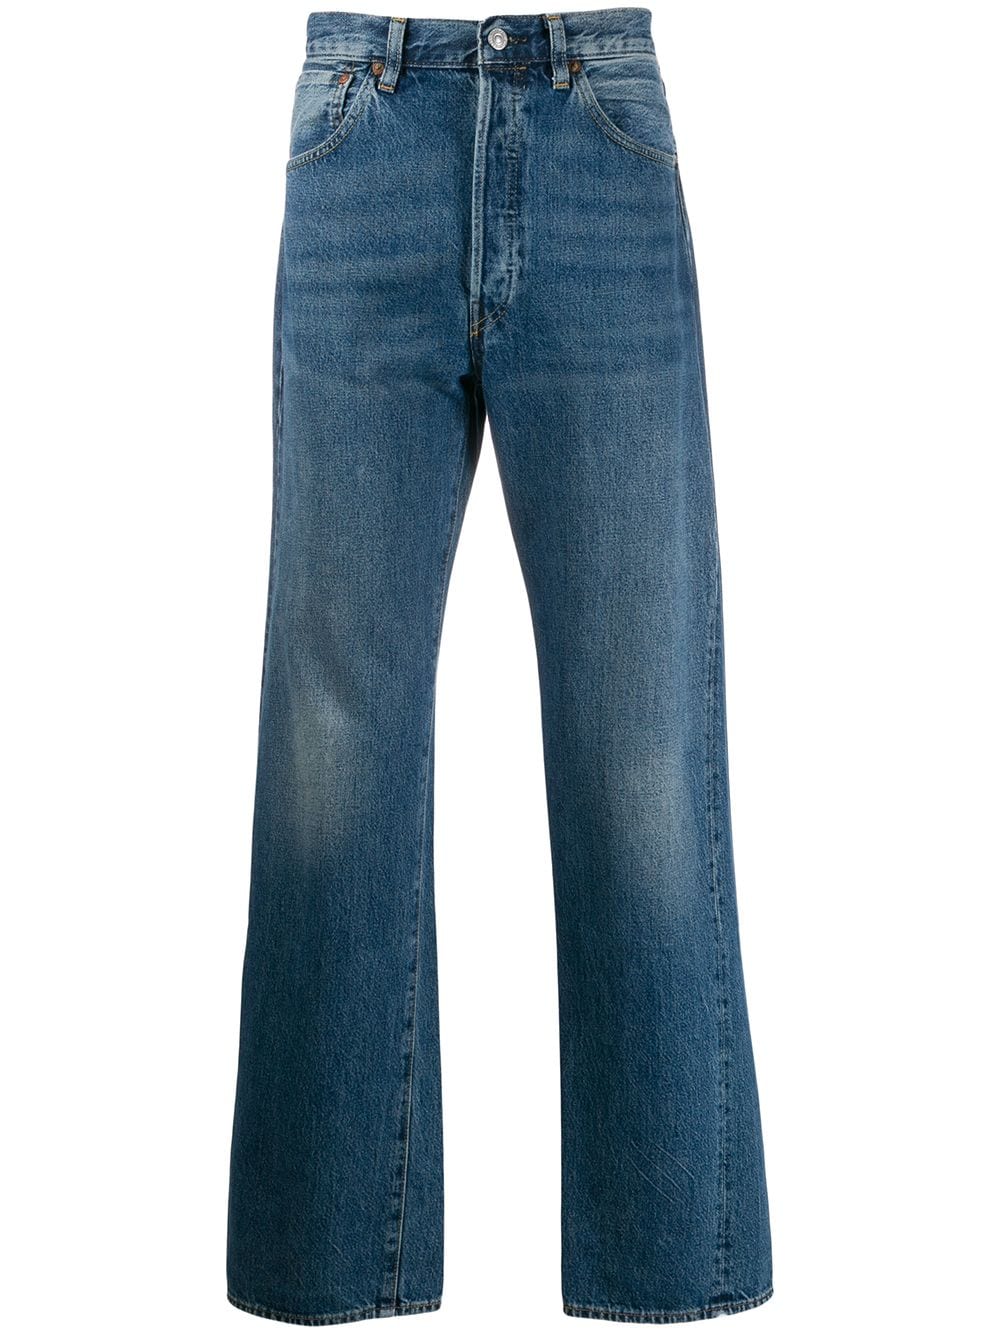 фото Levi's Vintage Clothing джинсы свободного кроя